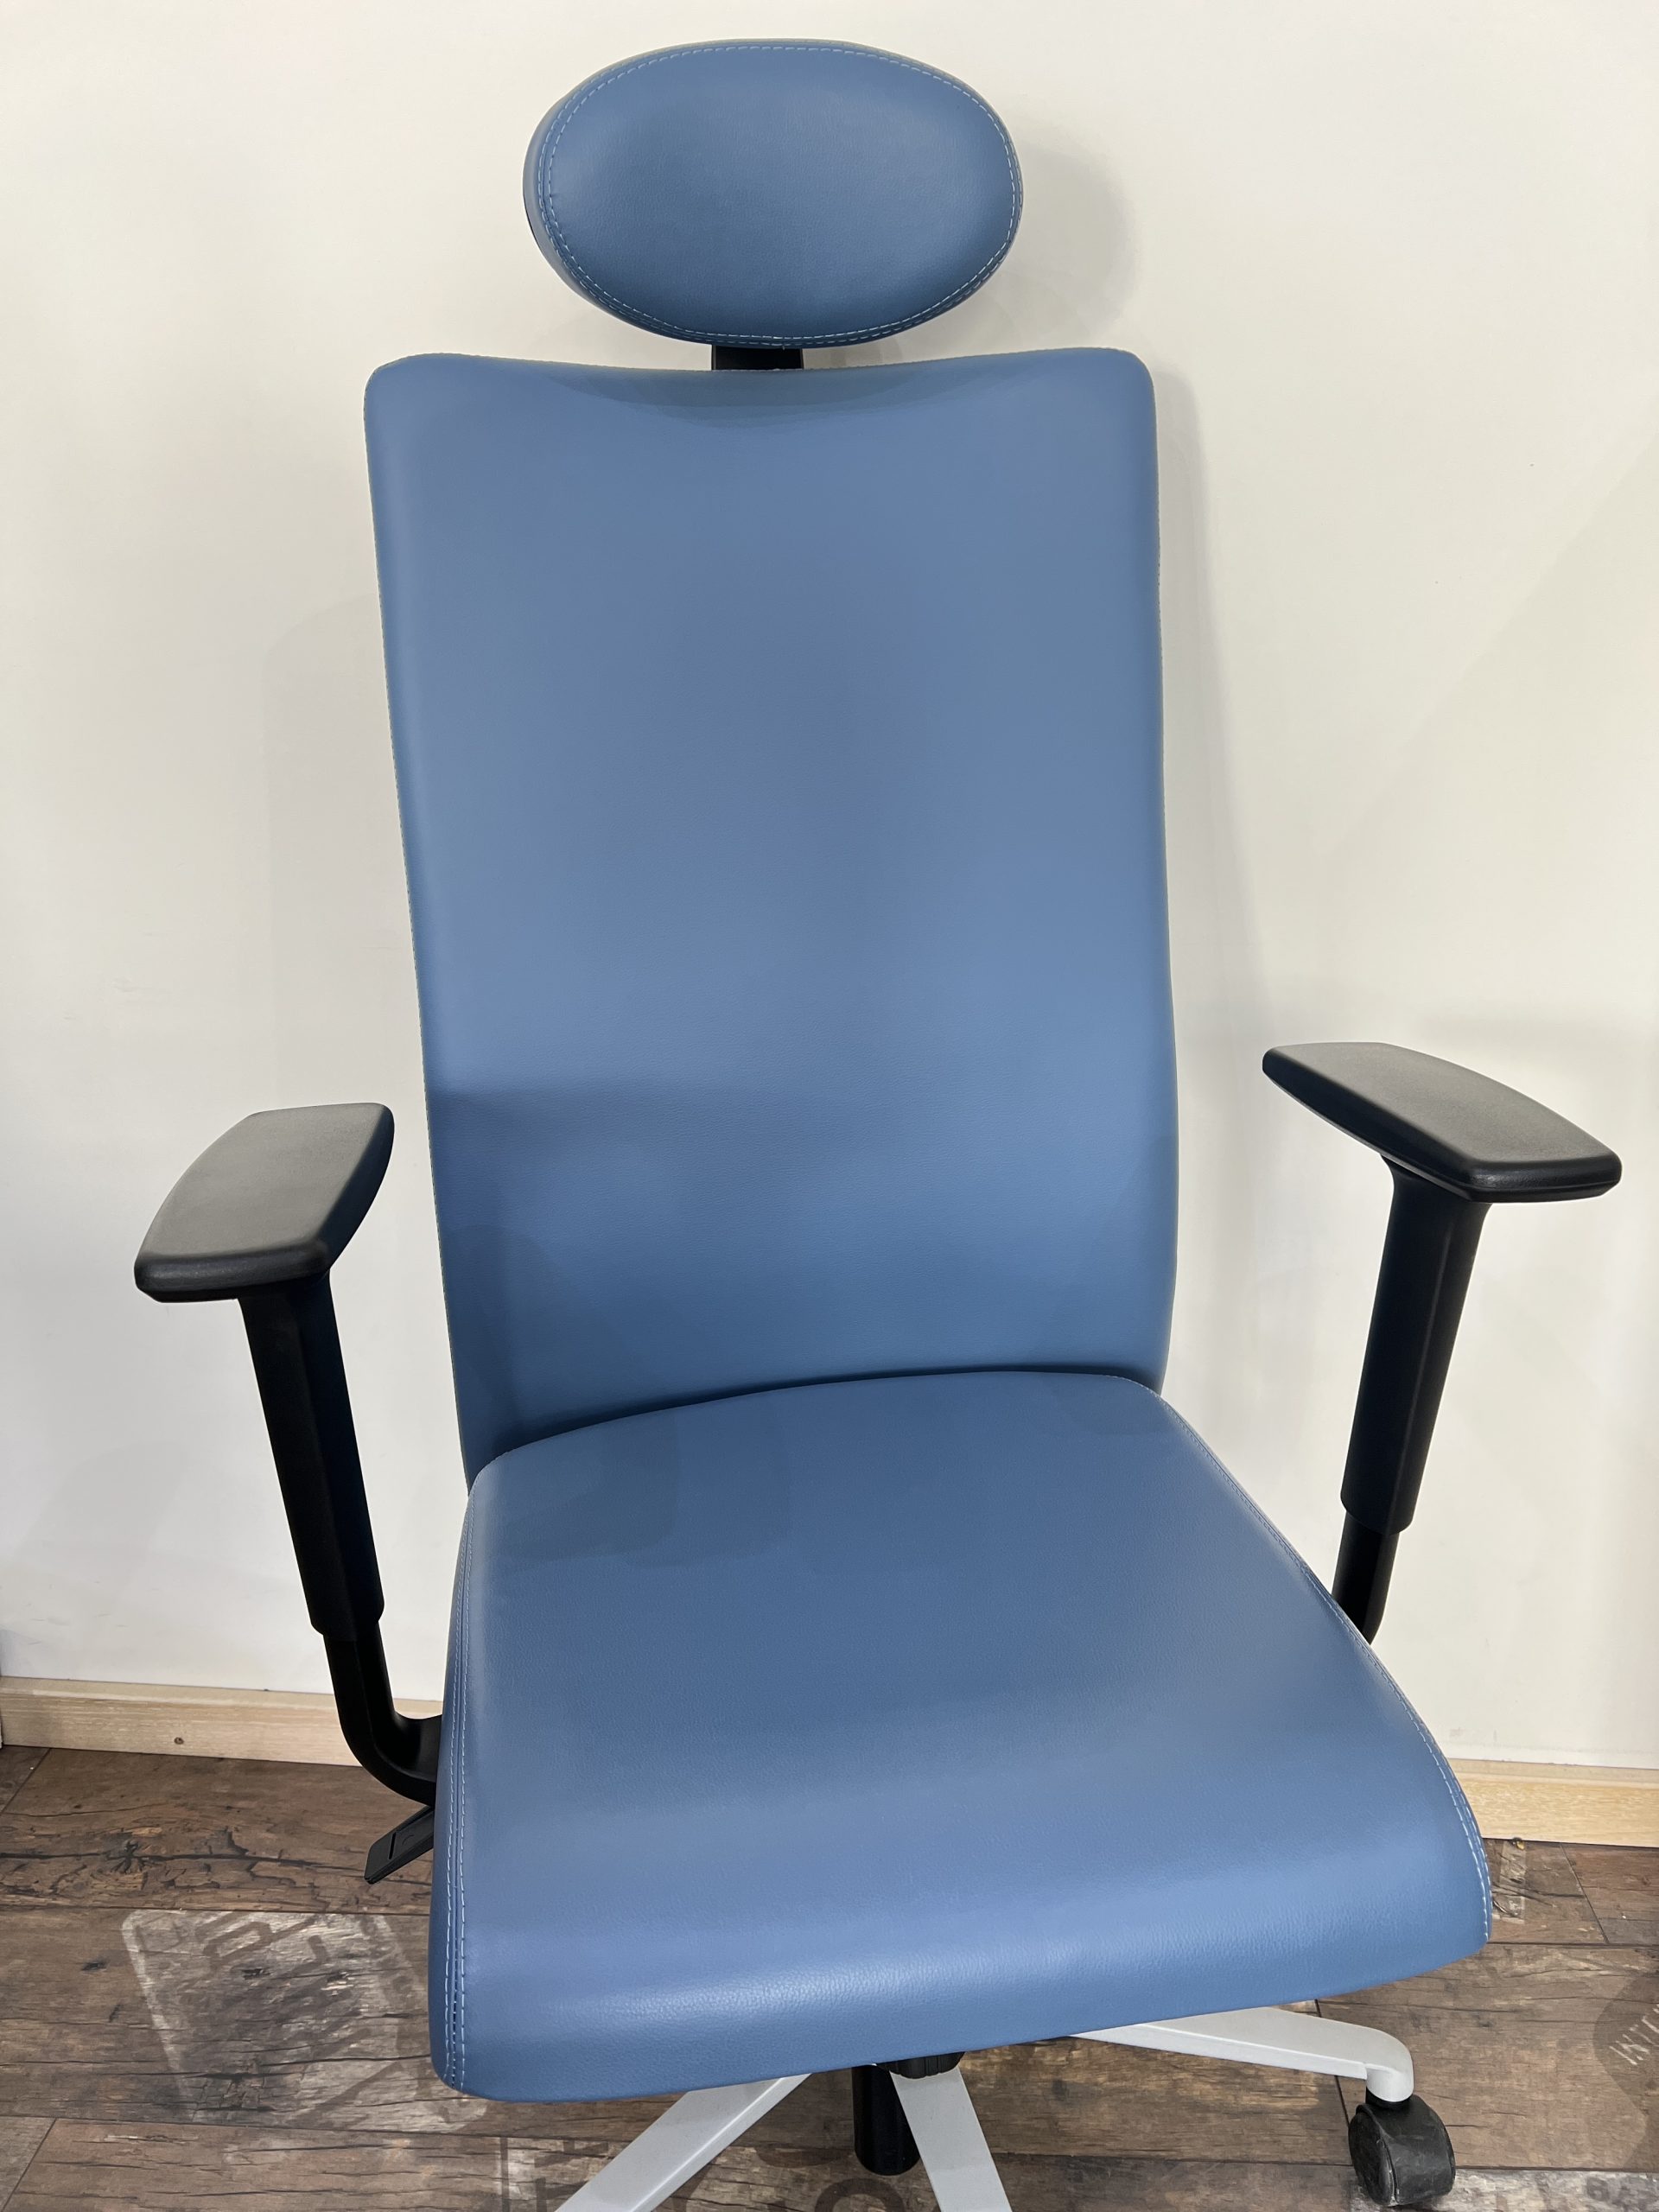 Εκθεσιακό Διευθυντικό Κάθισμα Dromeas Smart D Με Προσκέφαλο Δερματίνη Μπλε Πεντάνευρο Βαμμένο Γκρι